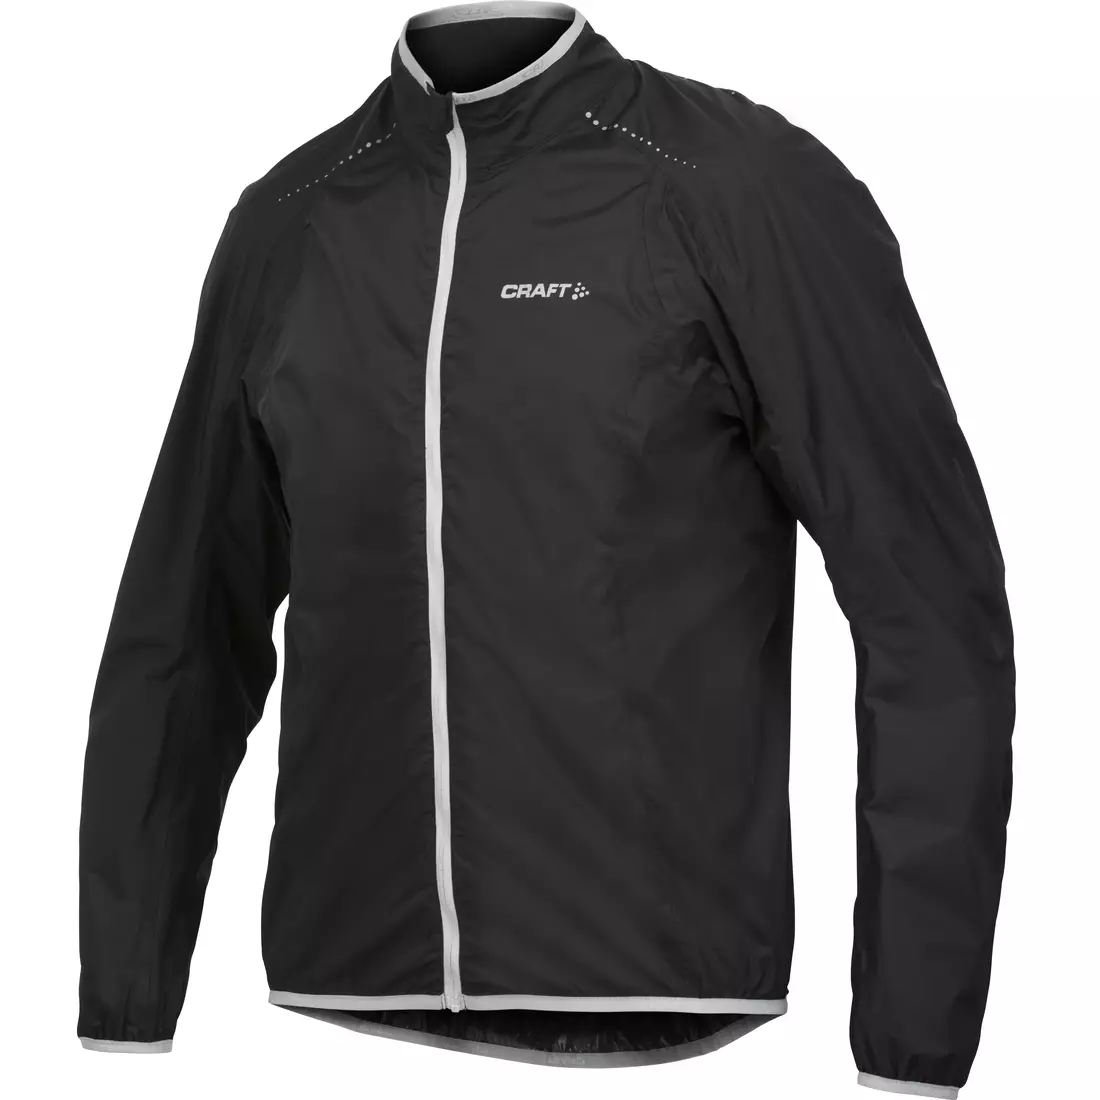 Jachetă pentru ciclism pentru bărbați CRAFT Active Light Rain 1902578-9920, culoare: negru